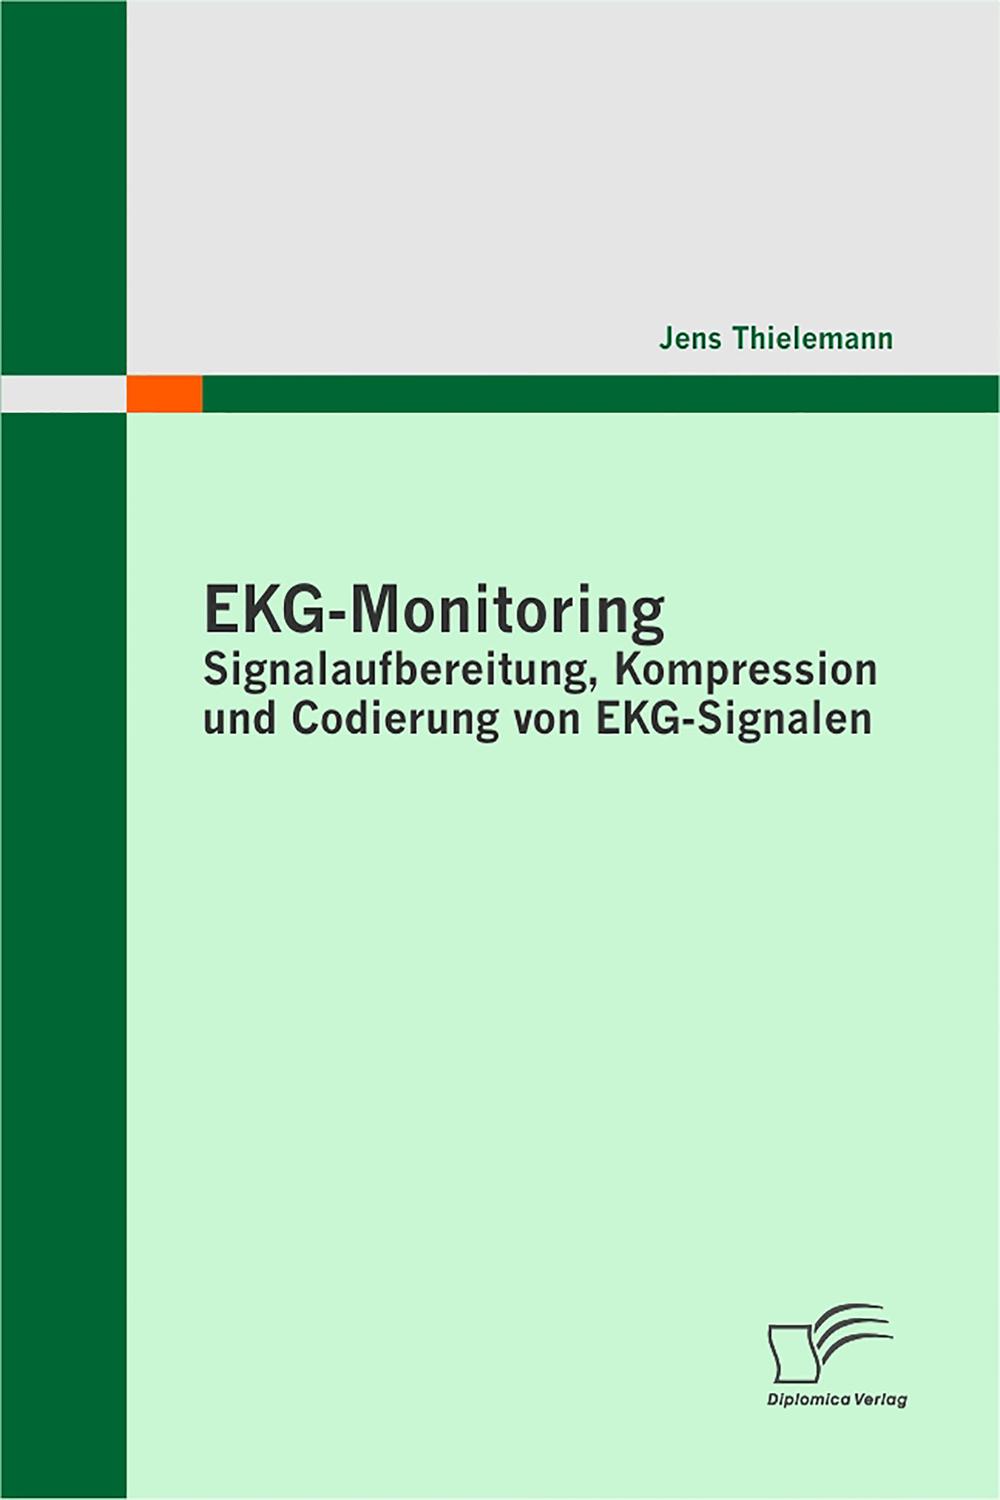 EKG-Monitoring: Signalaufbereitung, Kompression und Codierung von EKG-Signalen - Jens Thielemann